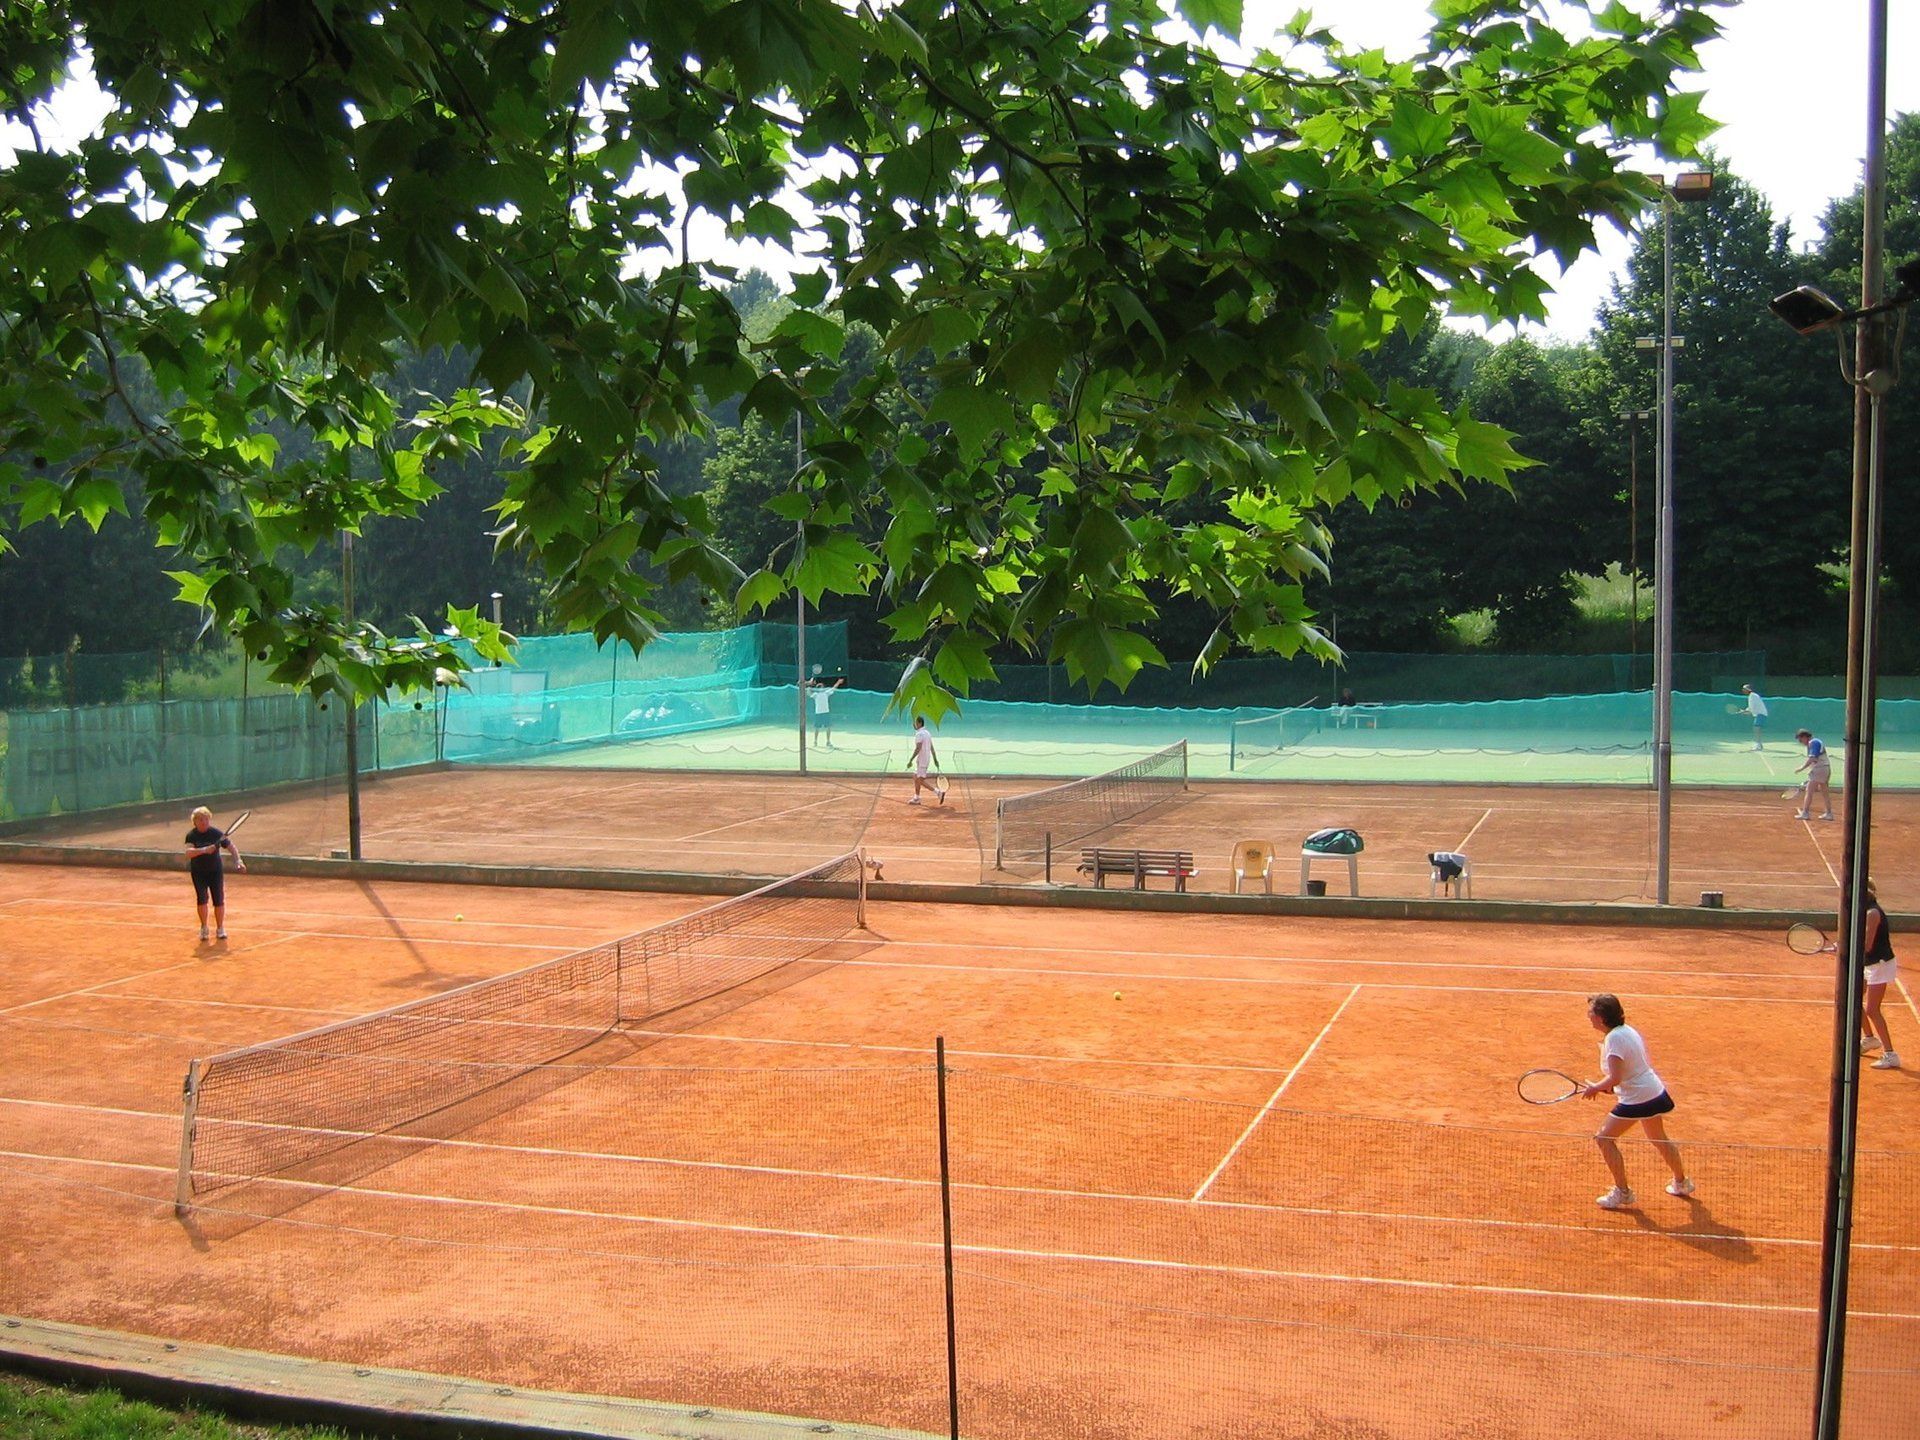 veduta dall'alto di un campo da tennis con persone che giocano